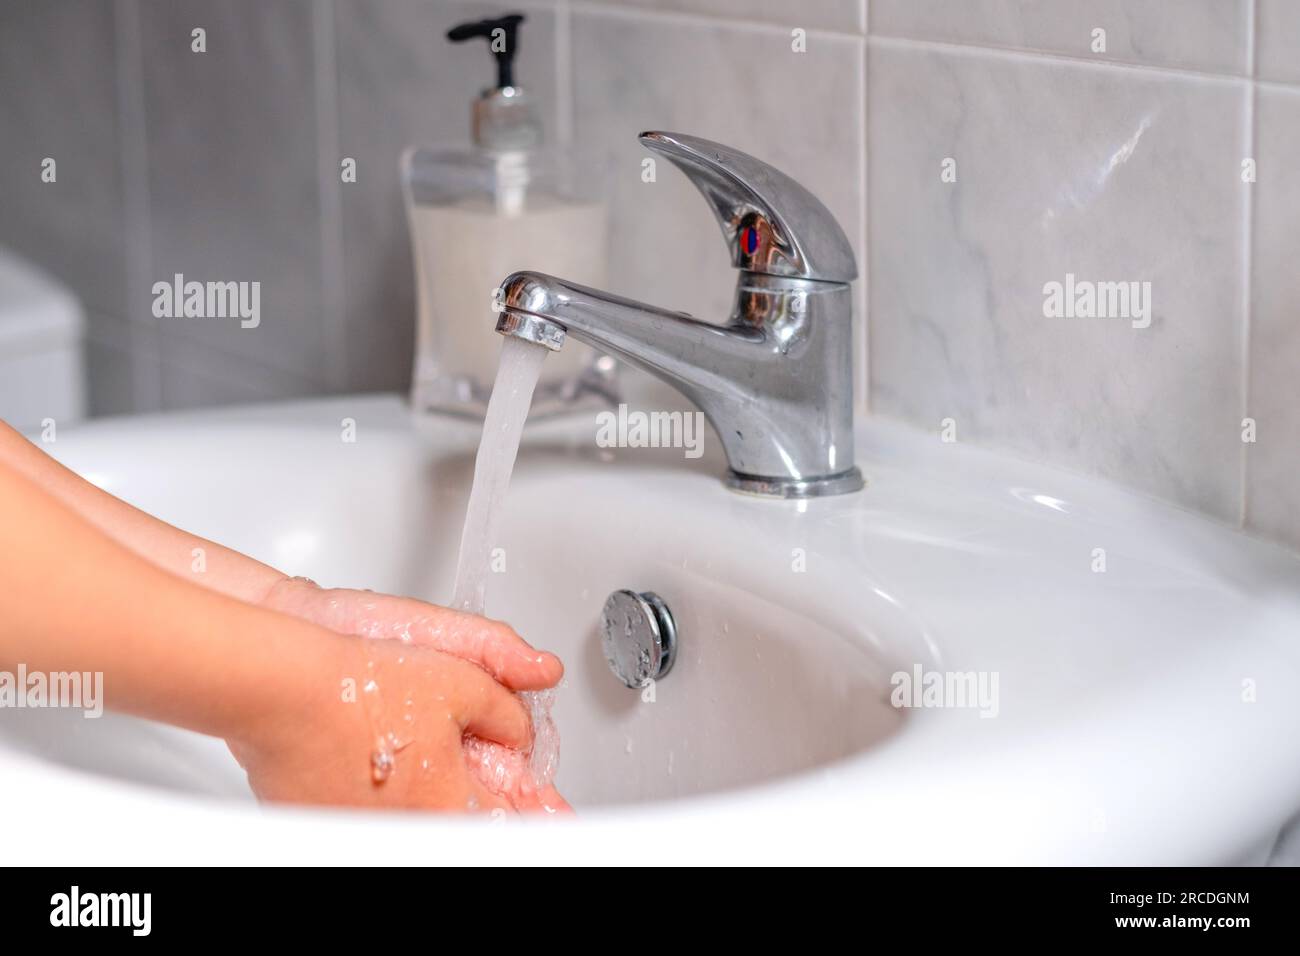 Ein Kind, das sich vor dem Essen im Bad die Hände wäscht. Hygiene, Sauberkeitskonzept. Umweltschutz und die Rettung des Planeten Stockfoto